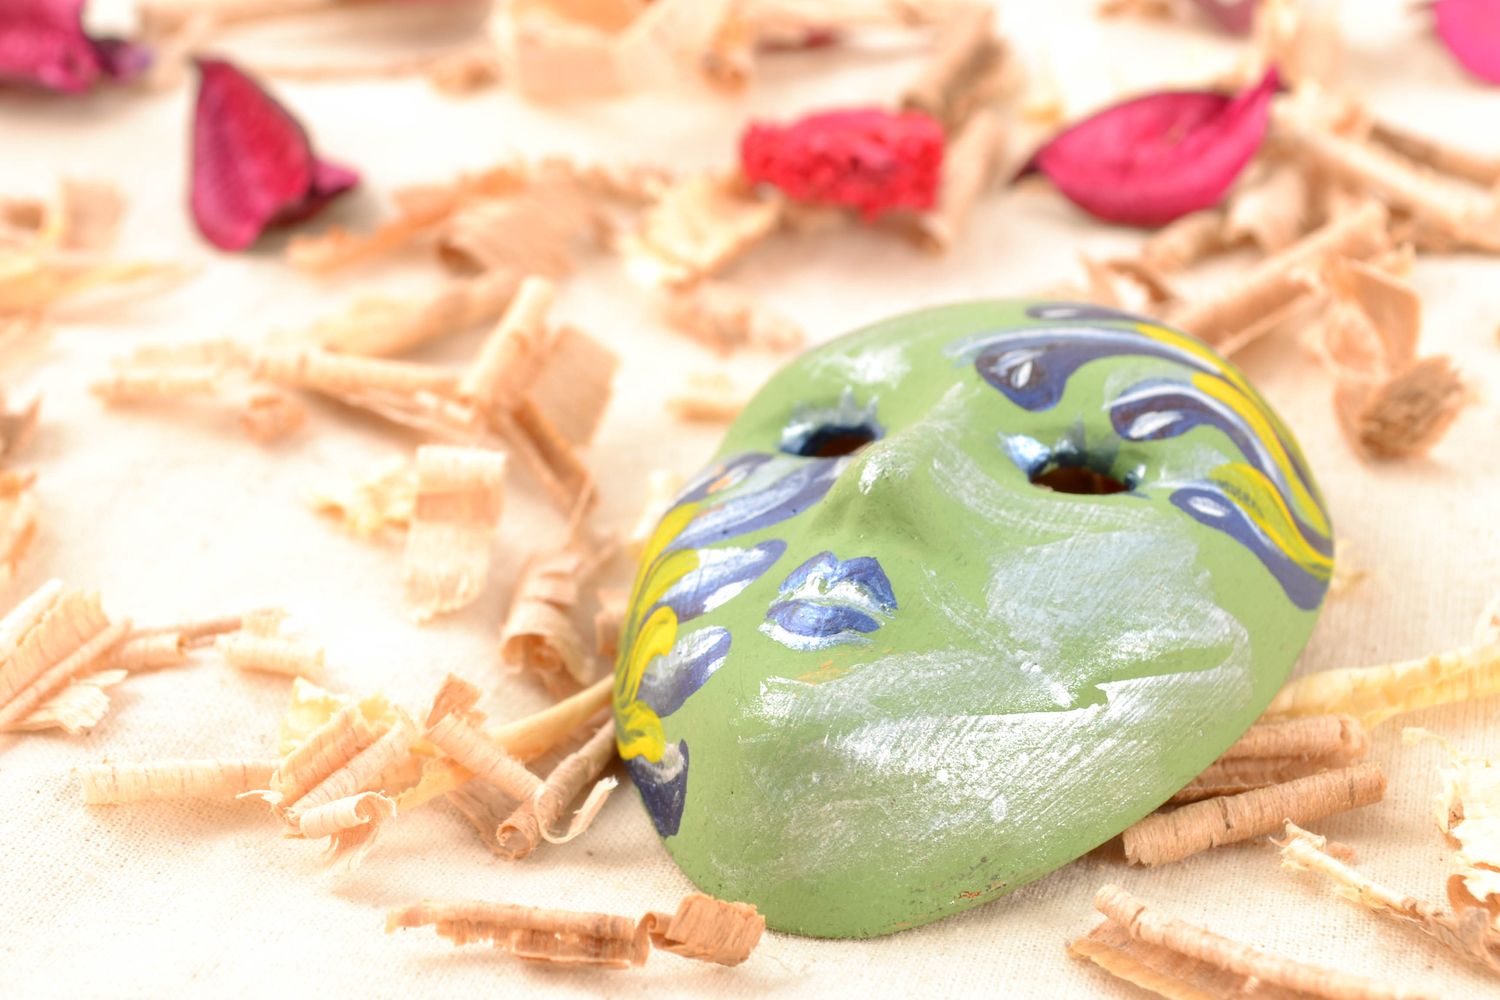 Maschera in argilla fatta a mano elemento decorativo d'autore originale
 foto 2